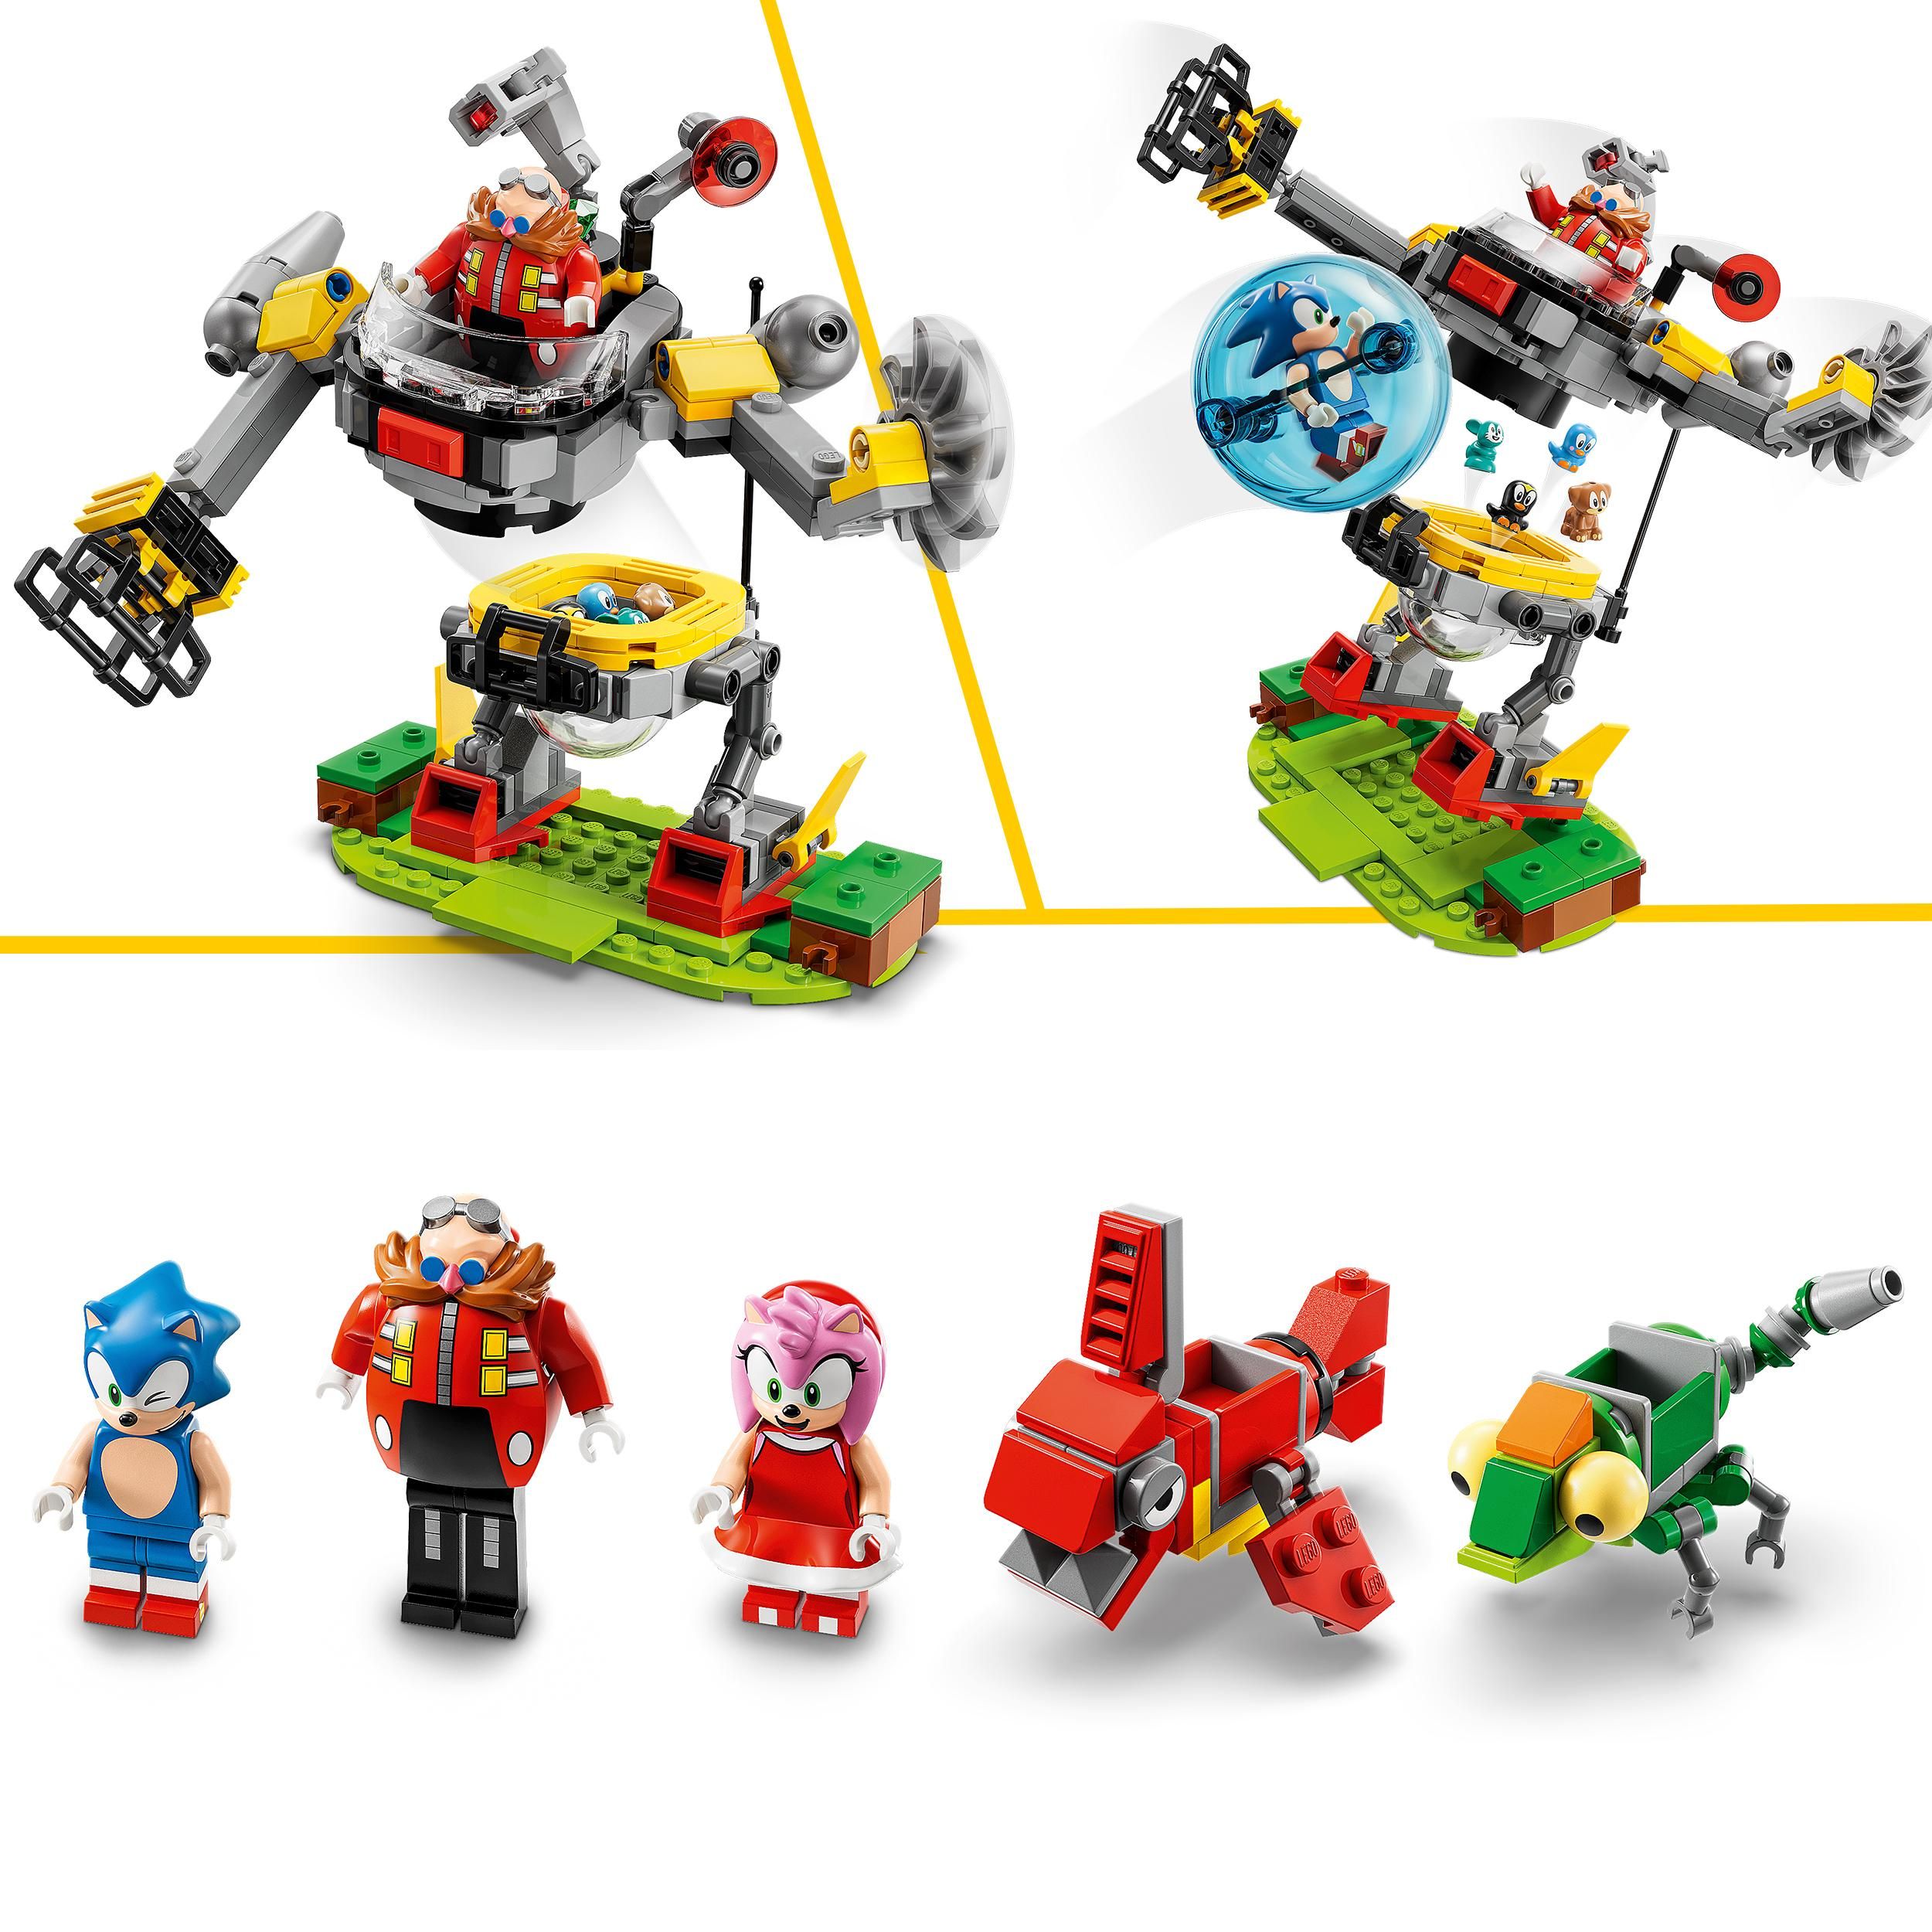 Lego-sonic o jogo ouriço, zona colina verde, desafio loop, construção de  brinquedo com 9 personagens